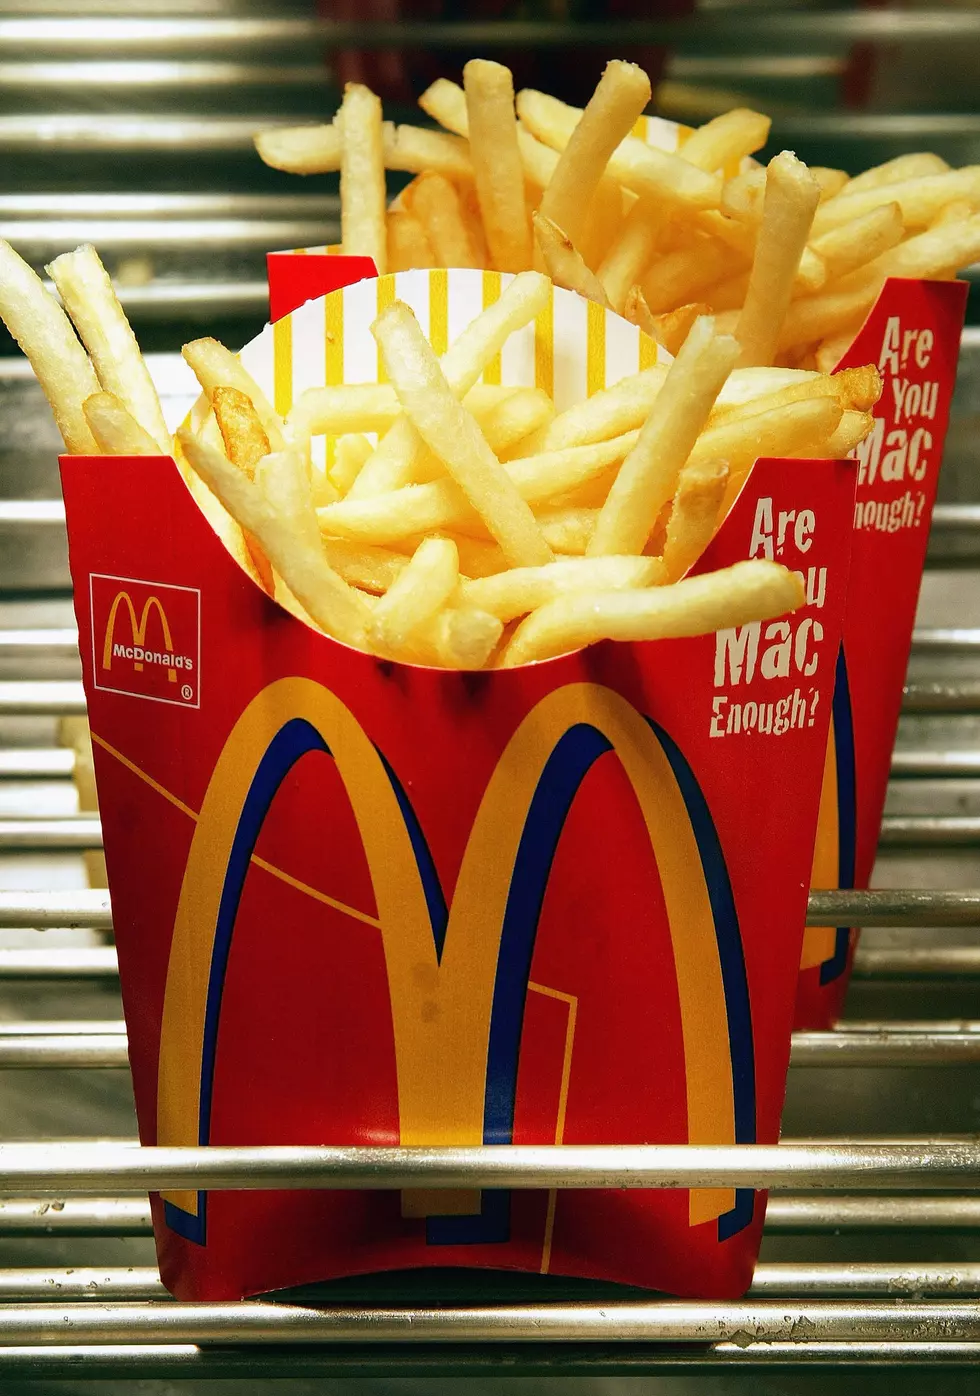 FriYAY at McDonald’s Calls for Free French Fries